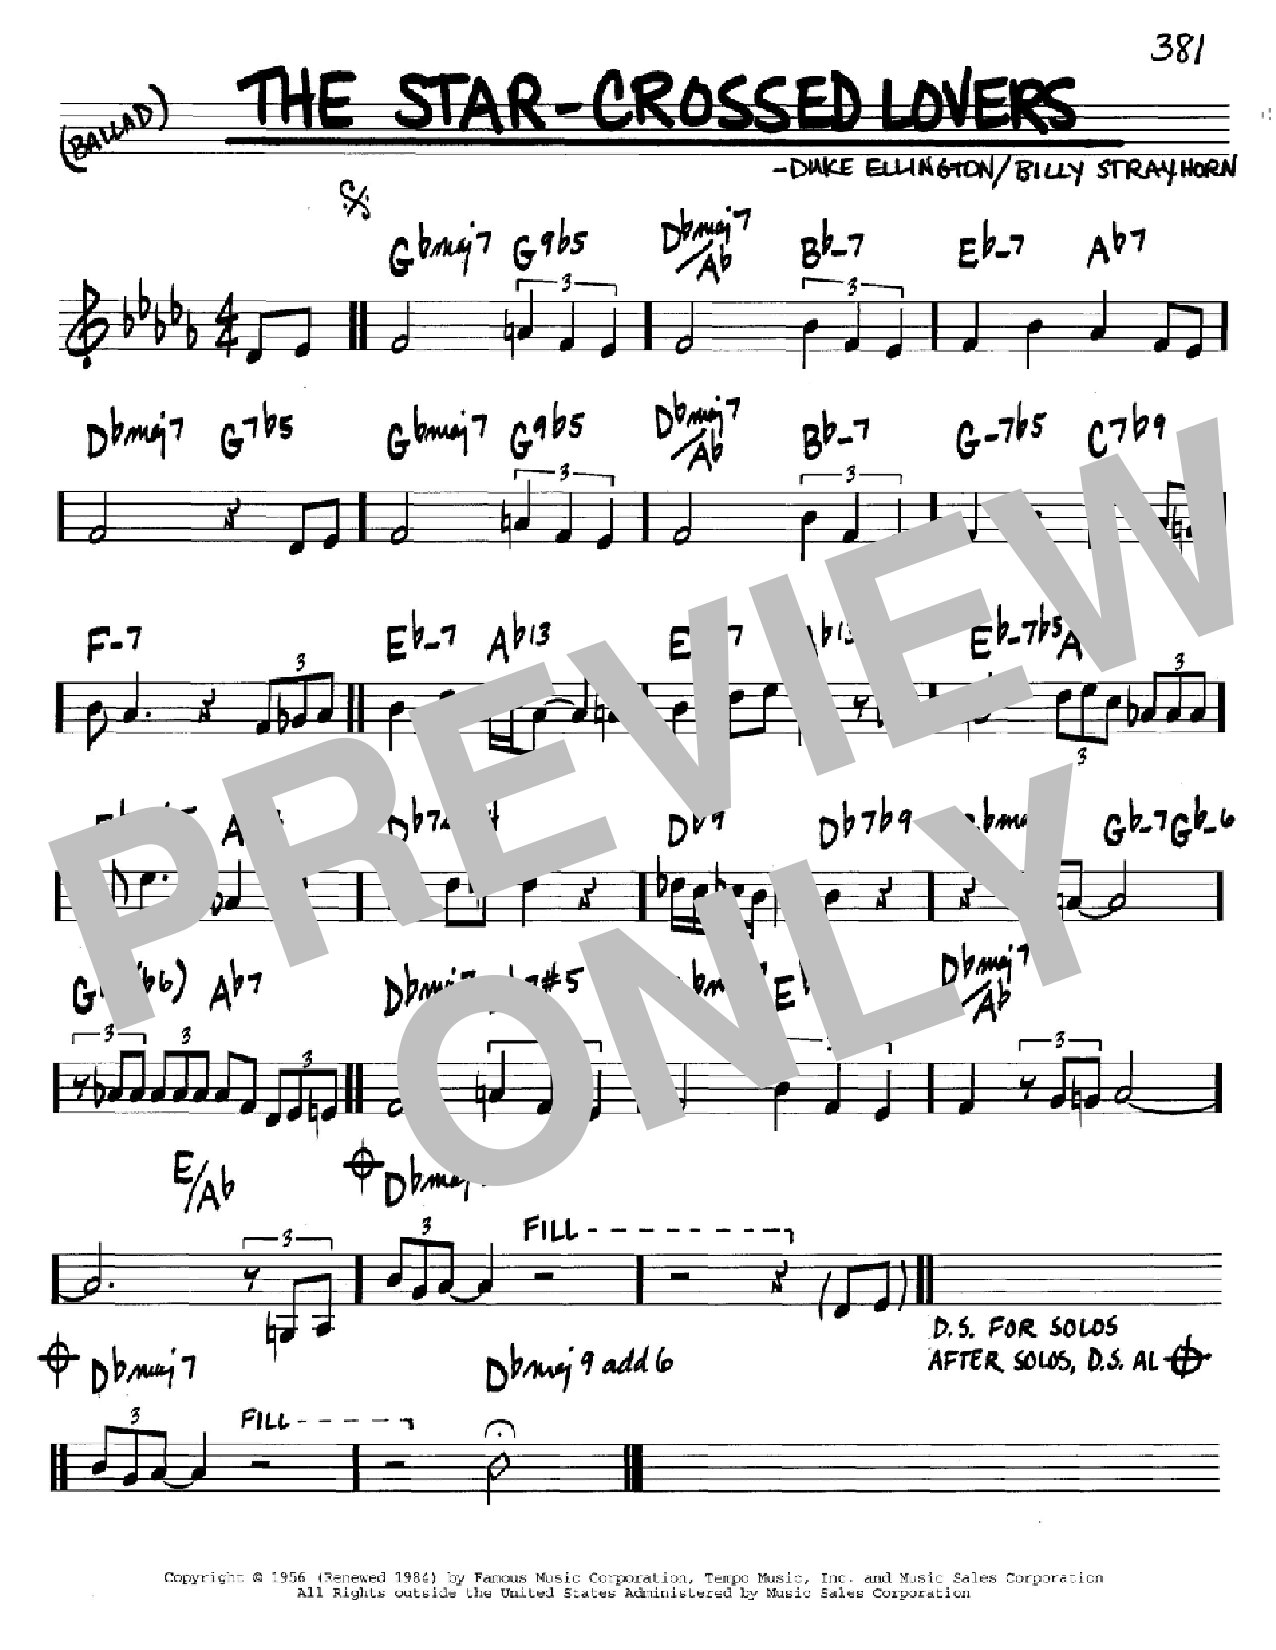 Download Duke Ellington The Star-Crossed Lovers Sheet Music